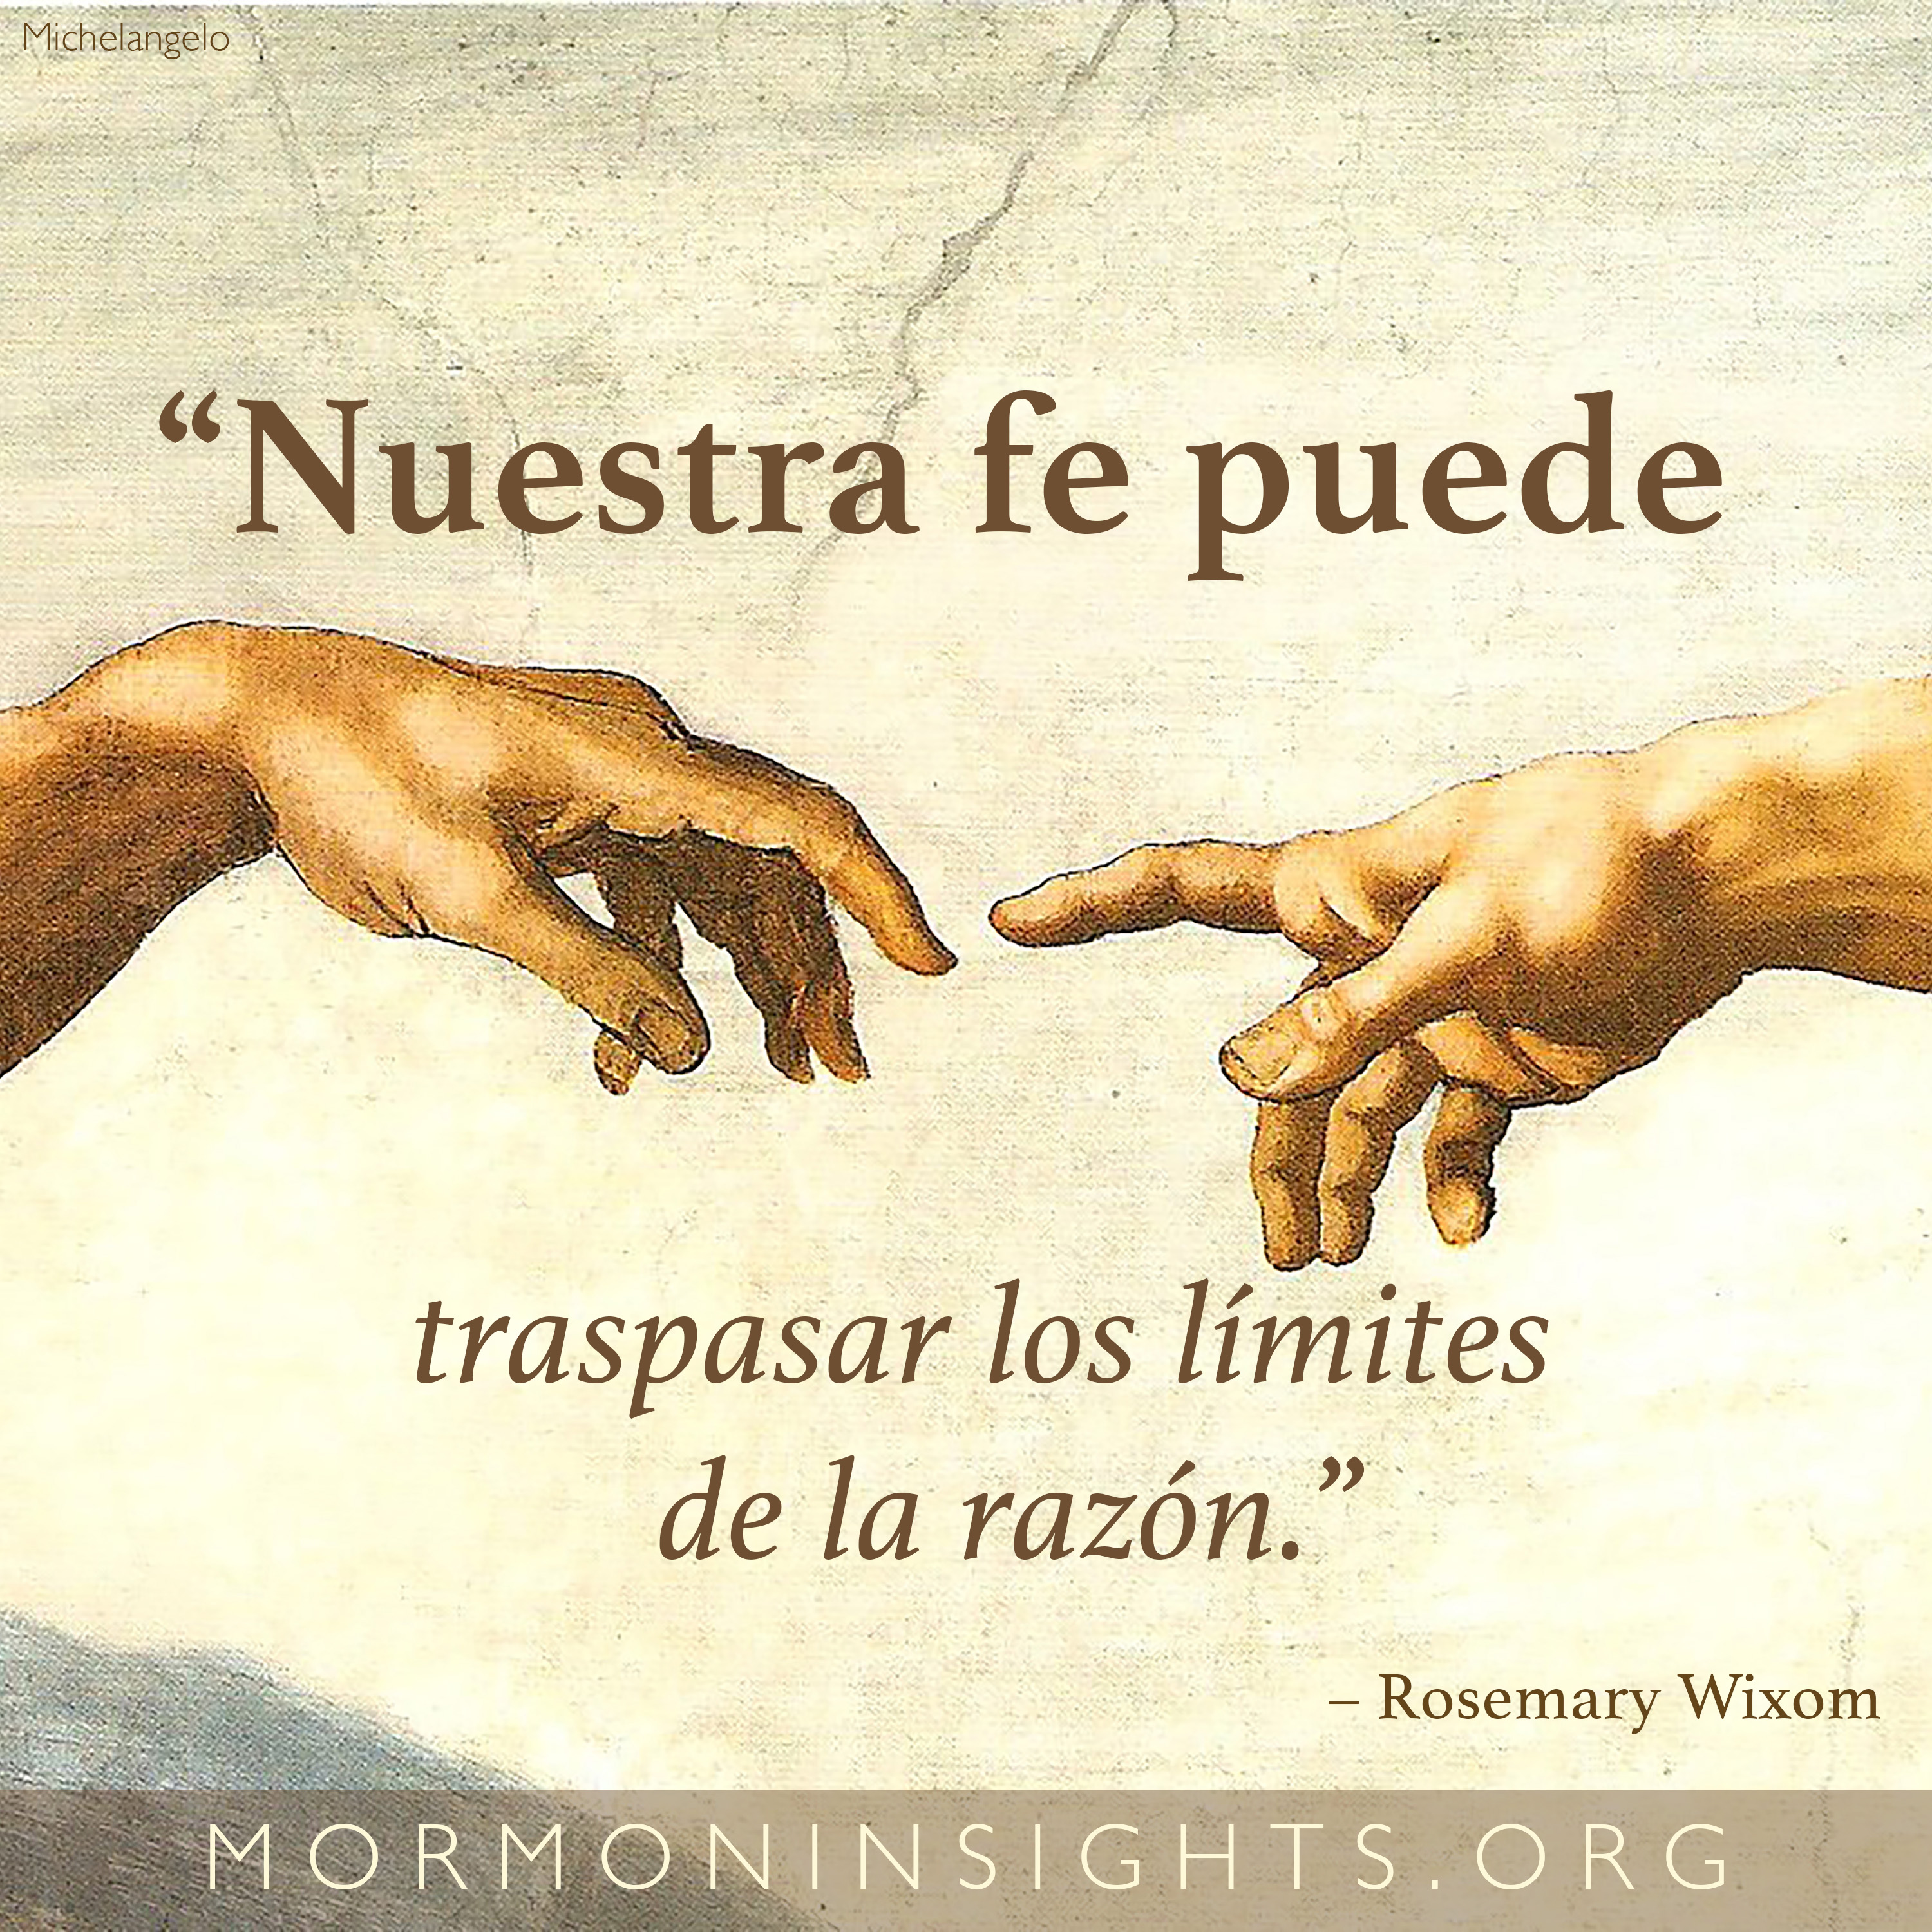 "“Nuestra fe puede traspasar los límites de la razón.” —Rosemary Wixom "